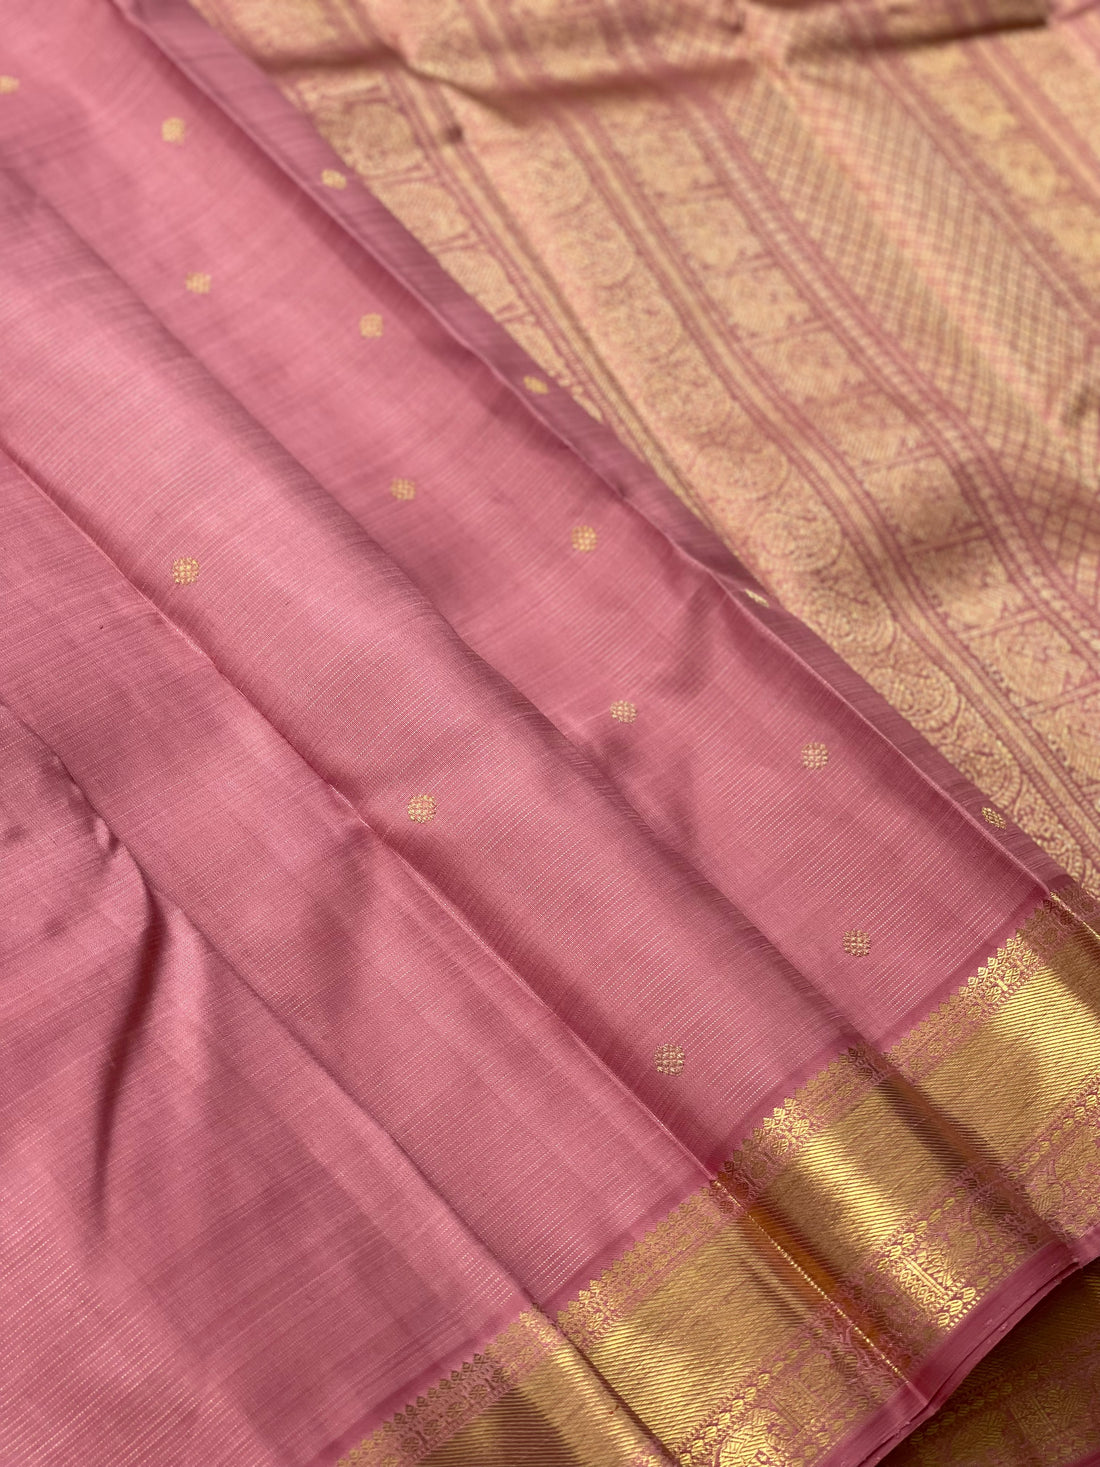 Heirloom vairaoosi kanchivaram silk saree in Dusty rose pink